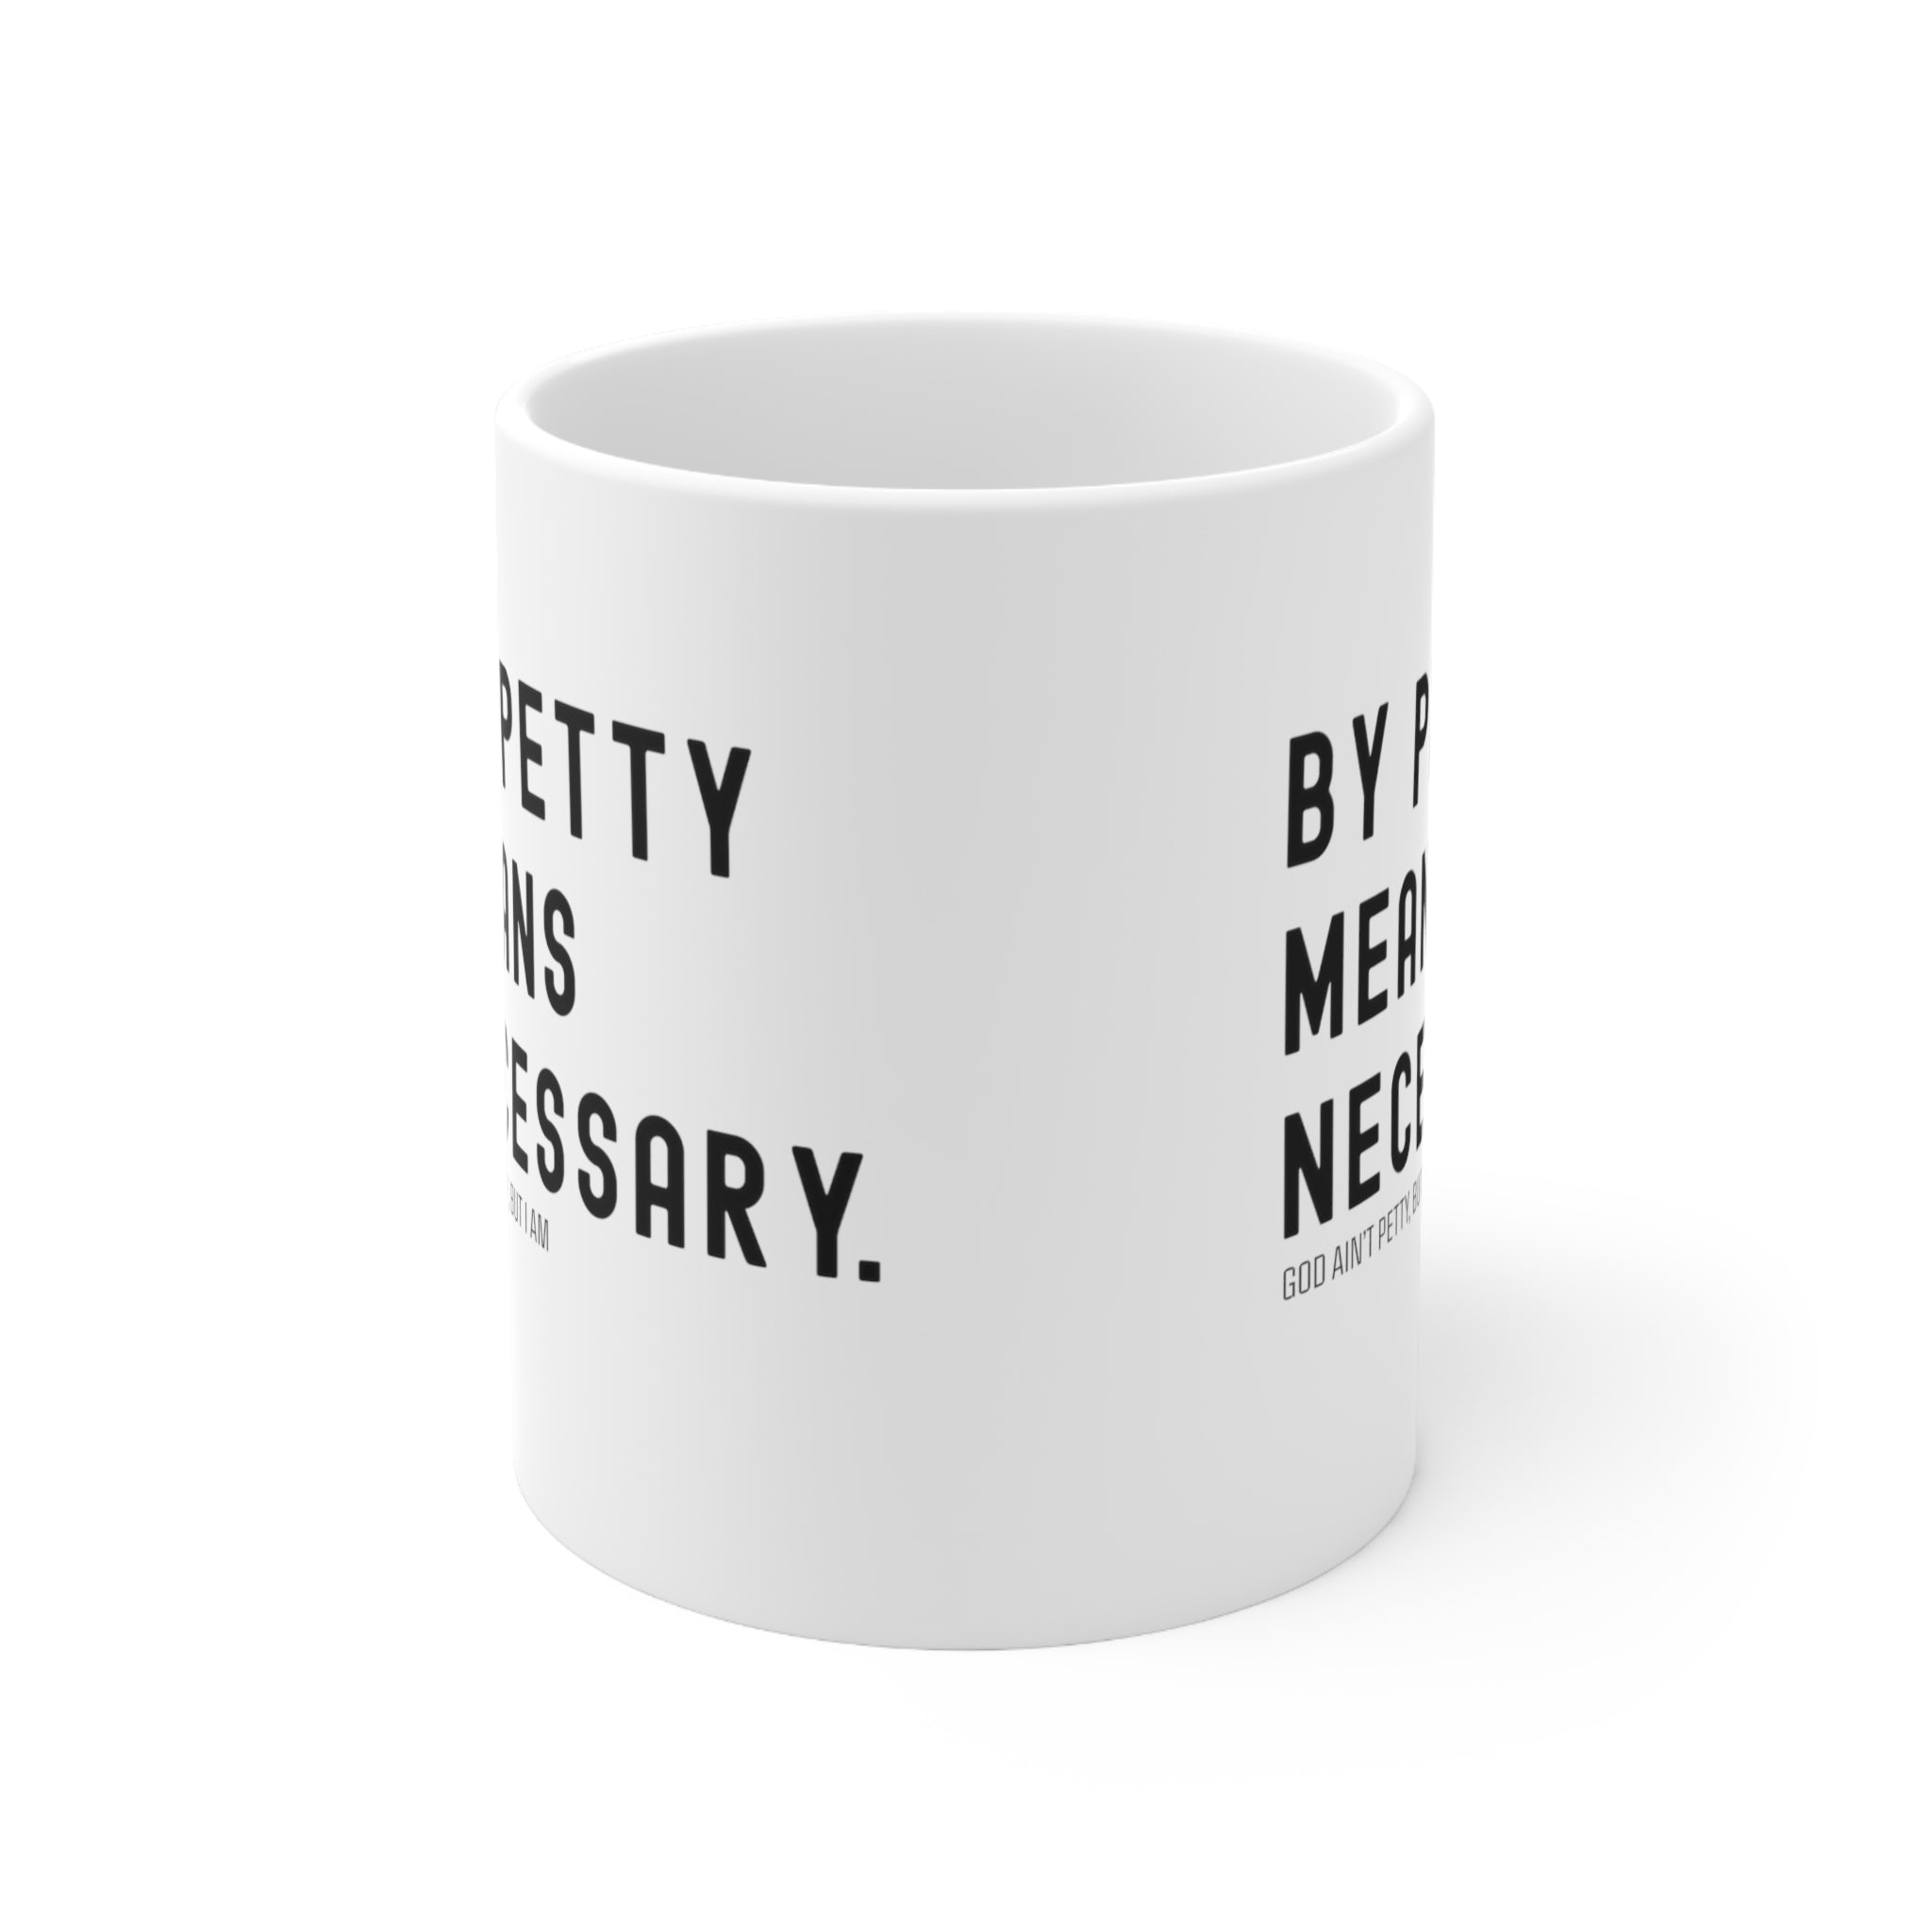 By Petty means necessary Mug 11oz (White/Black)-Mug-The Original God Ain't Petty But I Am